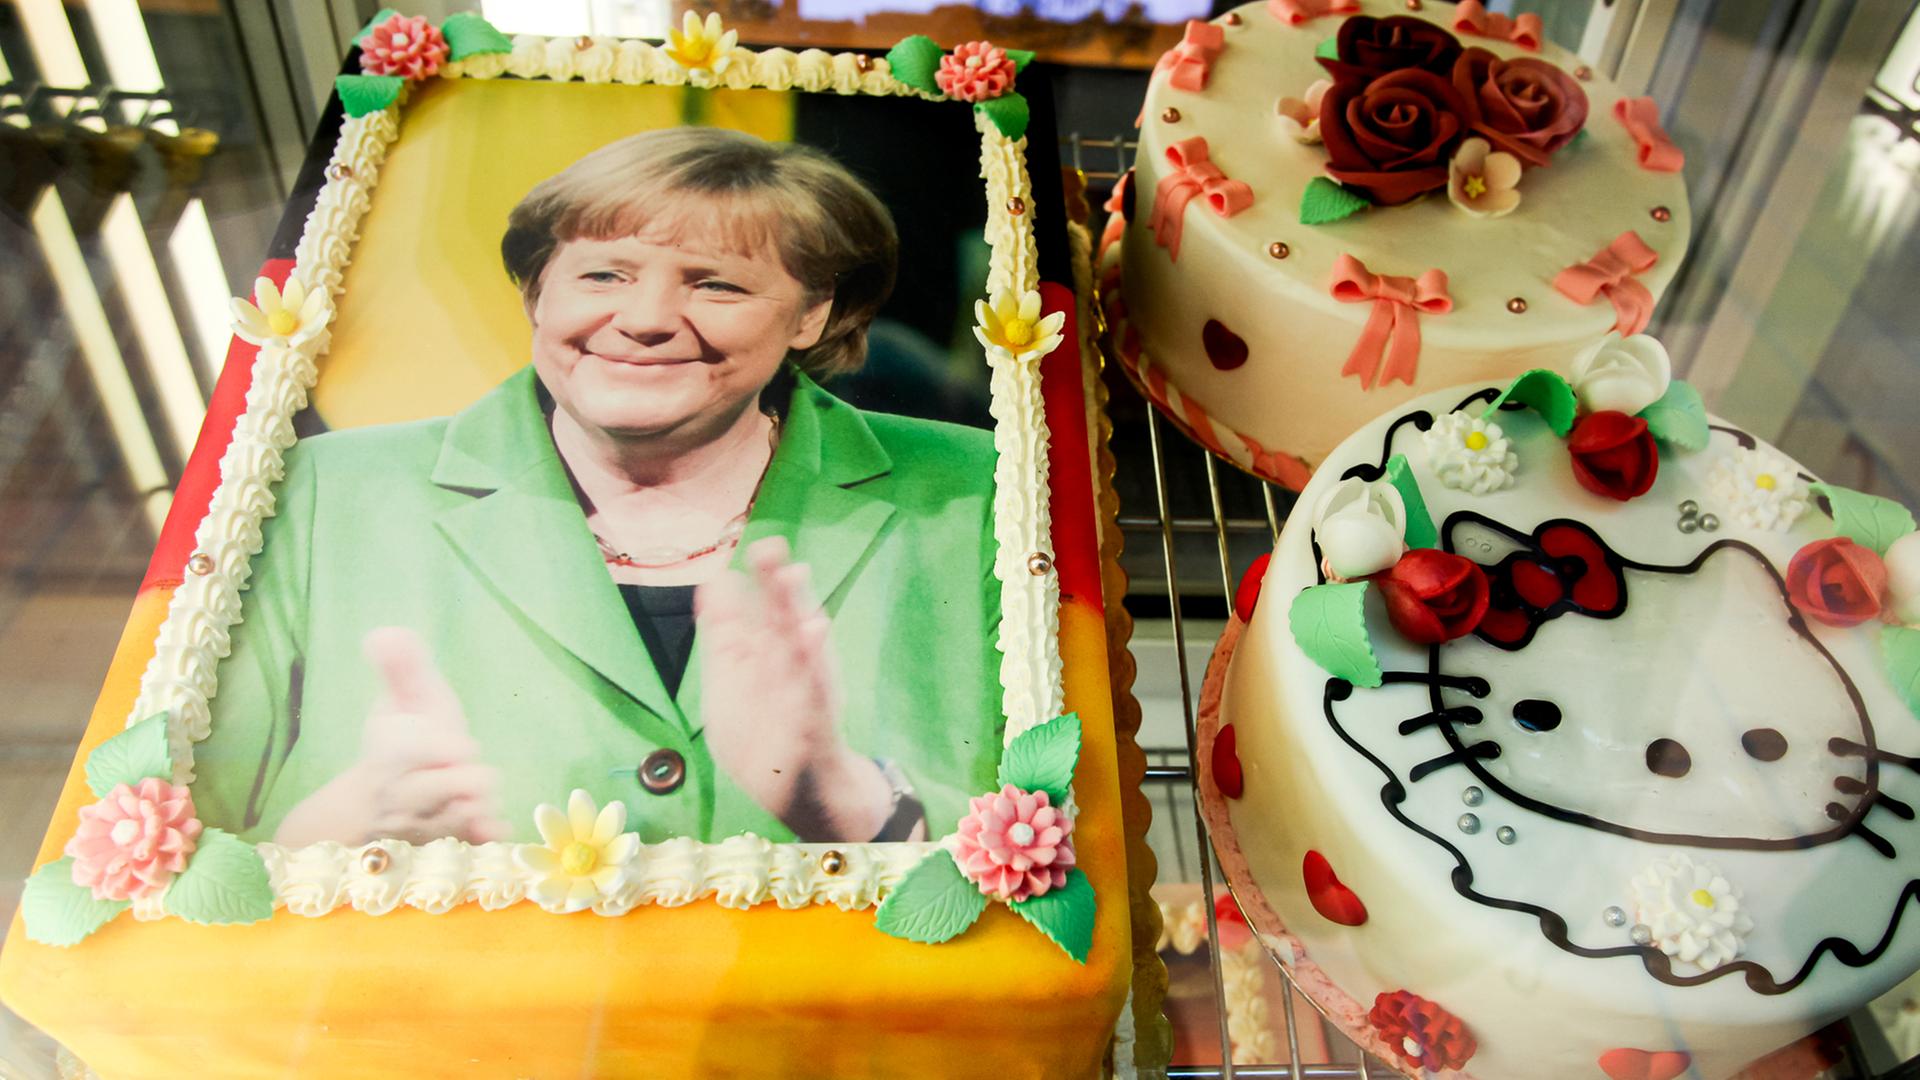 Eine Torte, die mit dem Antlitz der Bundeskanzlerin Angela Merkel dekoriert und mit den deutschen Nationalfarben schwarz, rot, gold umrandet ist, liegt am 29.11.2015 in der Auslage eines Eiscafes auf der Seebrücke in Heringsdorf auf der Insel Usedom. 